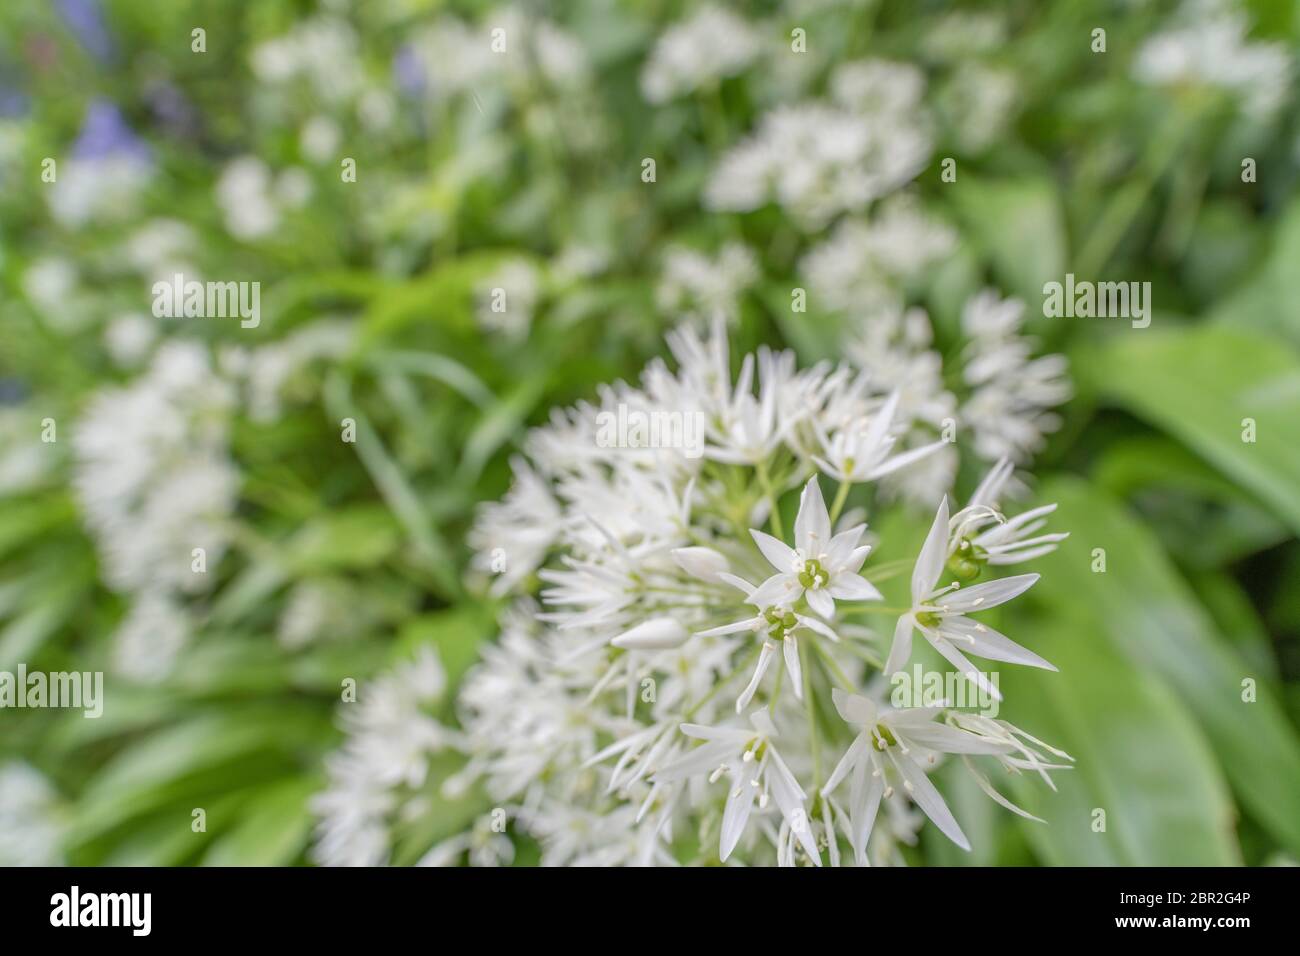 Gros plan grand angle des fleurs blanches de l'ail sauvage appelé Ramsons / Allium ursinum - un favori fouragé vert sauvage comestible, et plante à base de plantes Banque D'Images